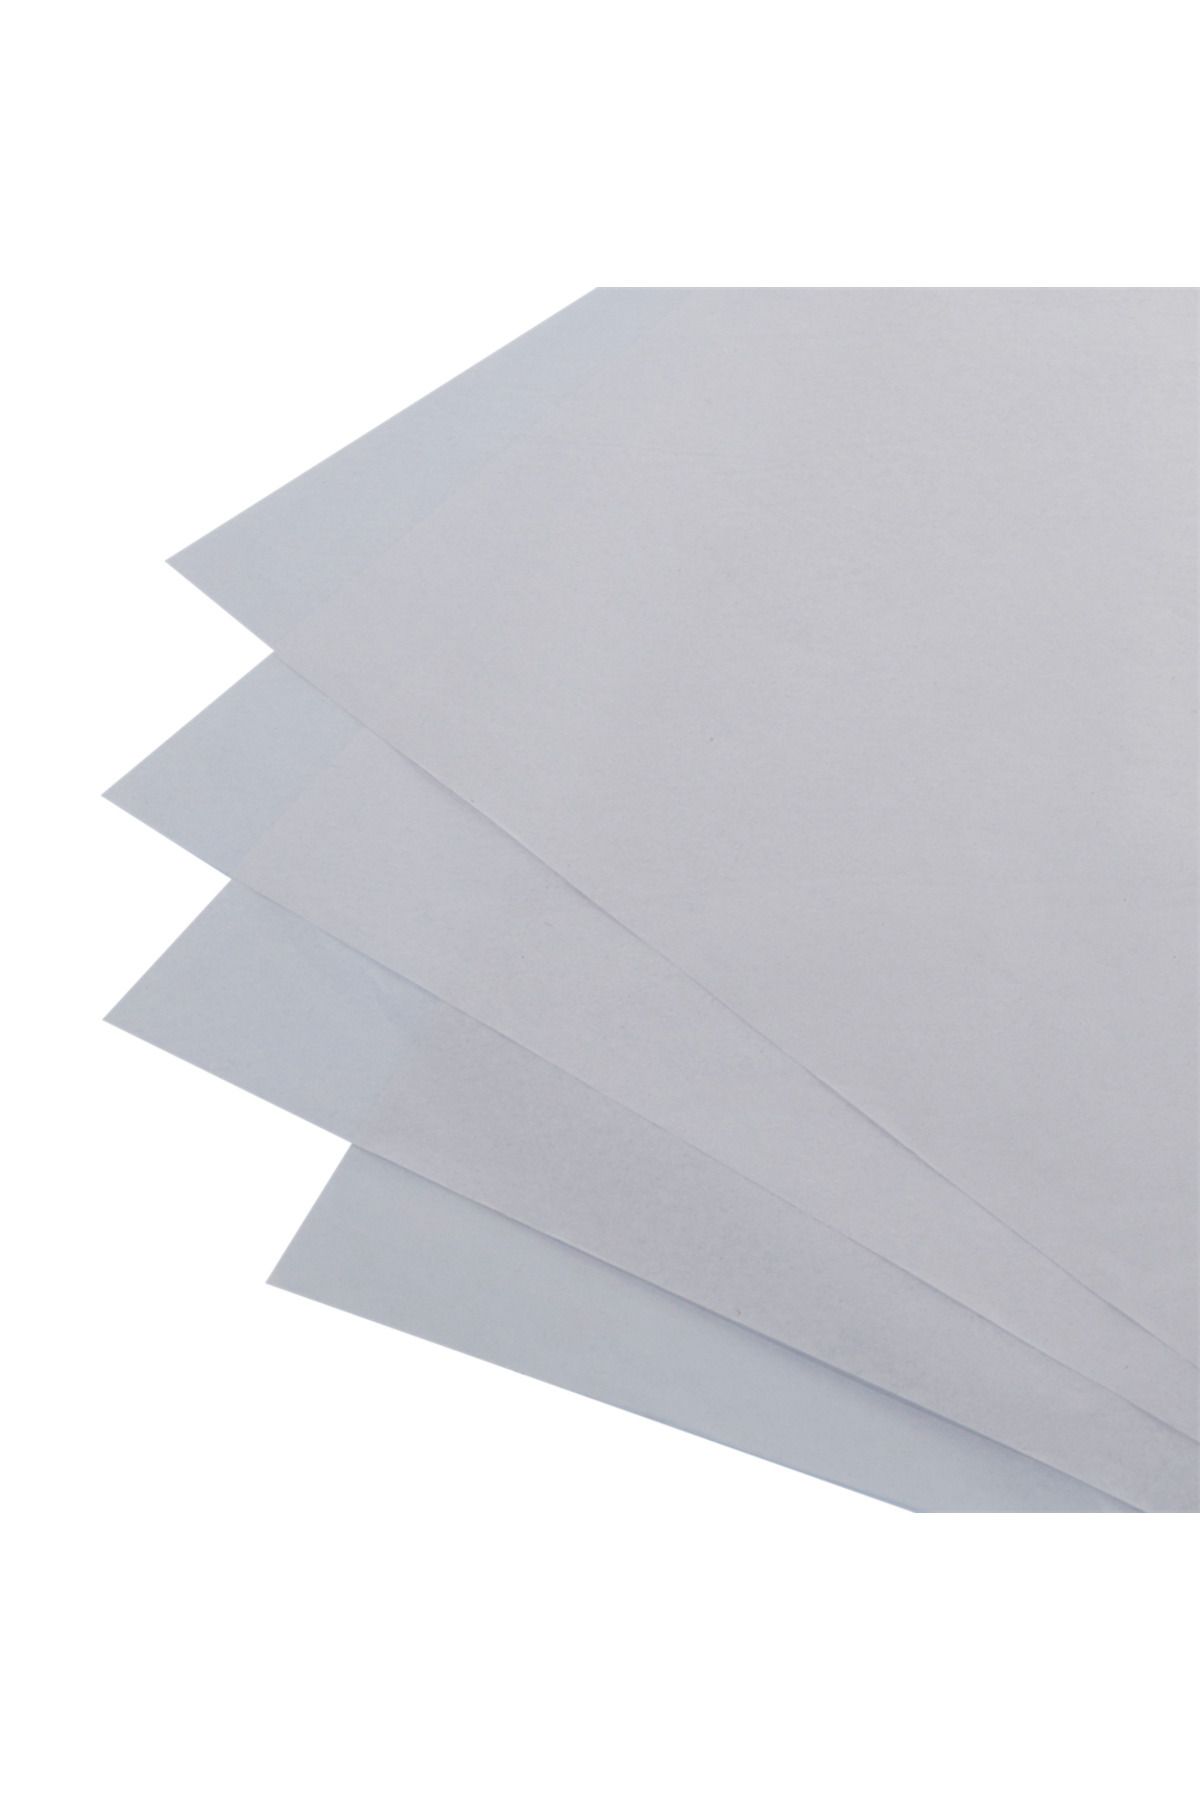 Packanya 50x70-100 Adet 17 Gr. Beyaz Pelur Kağıdı